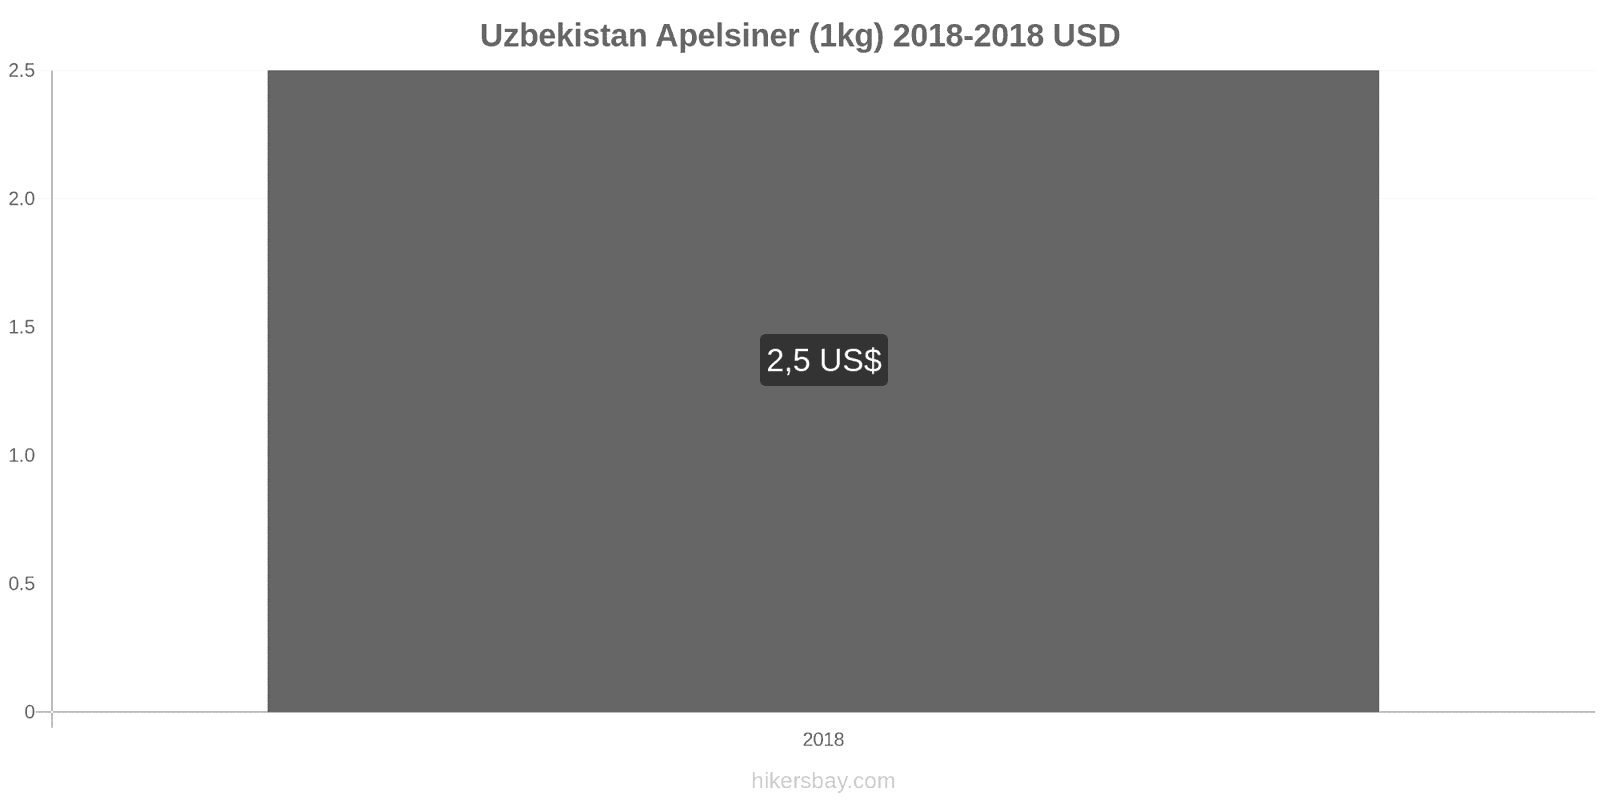 Uzbekistan prisändringar Apelsiner (1kg) hikersbay.com